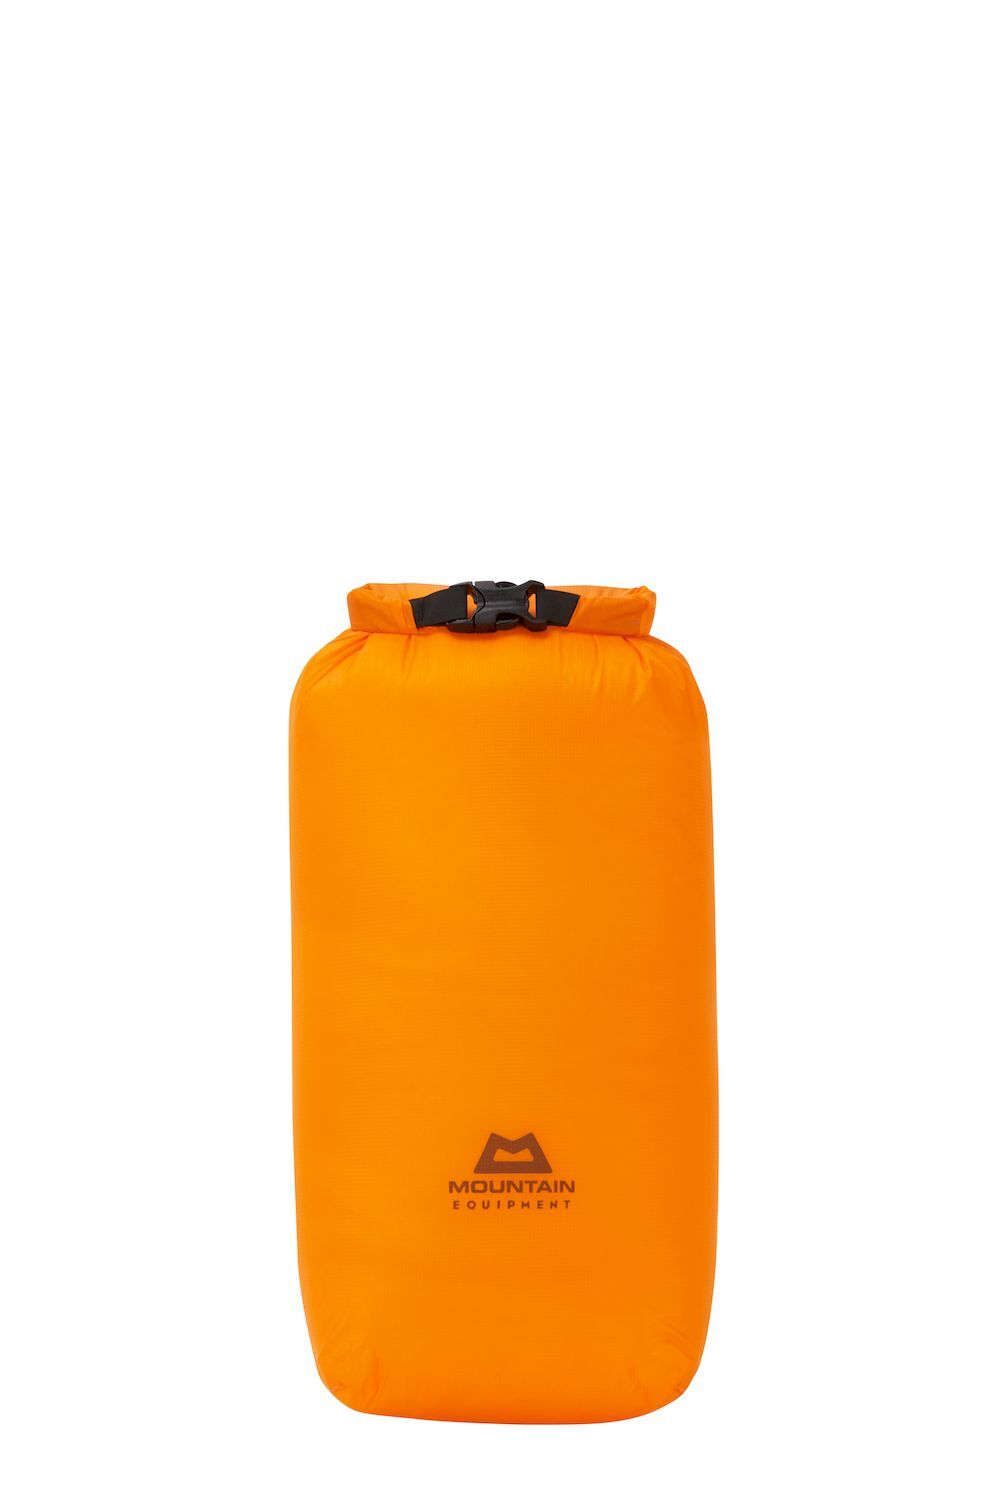 Mountain Equipment Lightweight Drybag 5L -